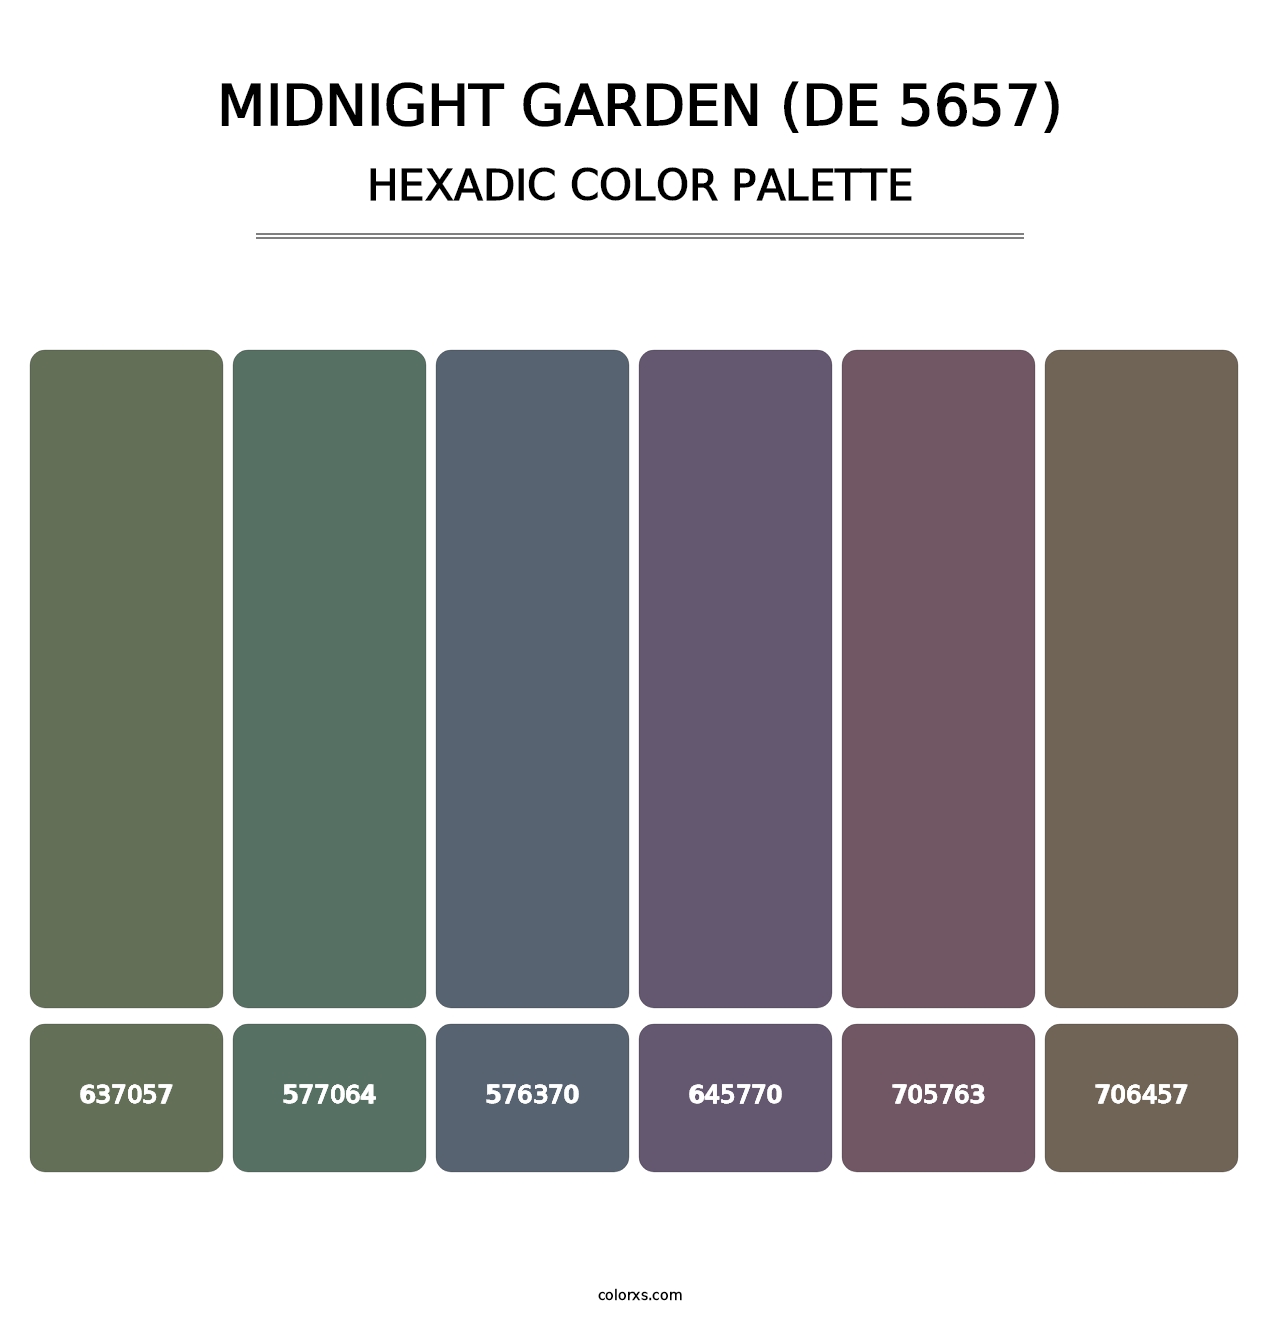 Midnight Garden (DE 5657) - Hexadic Color Palette